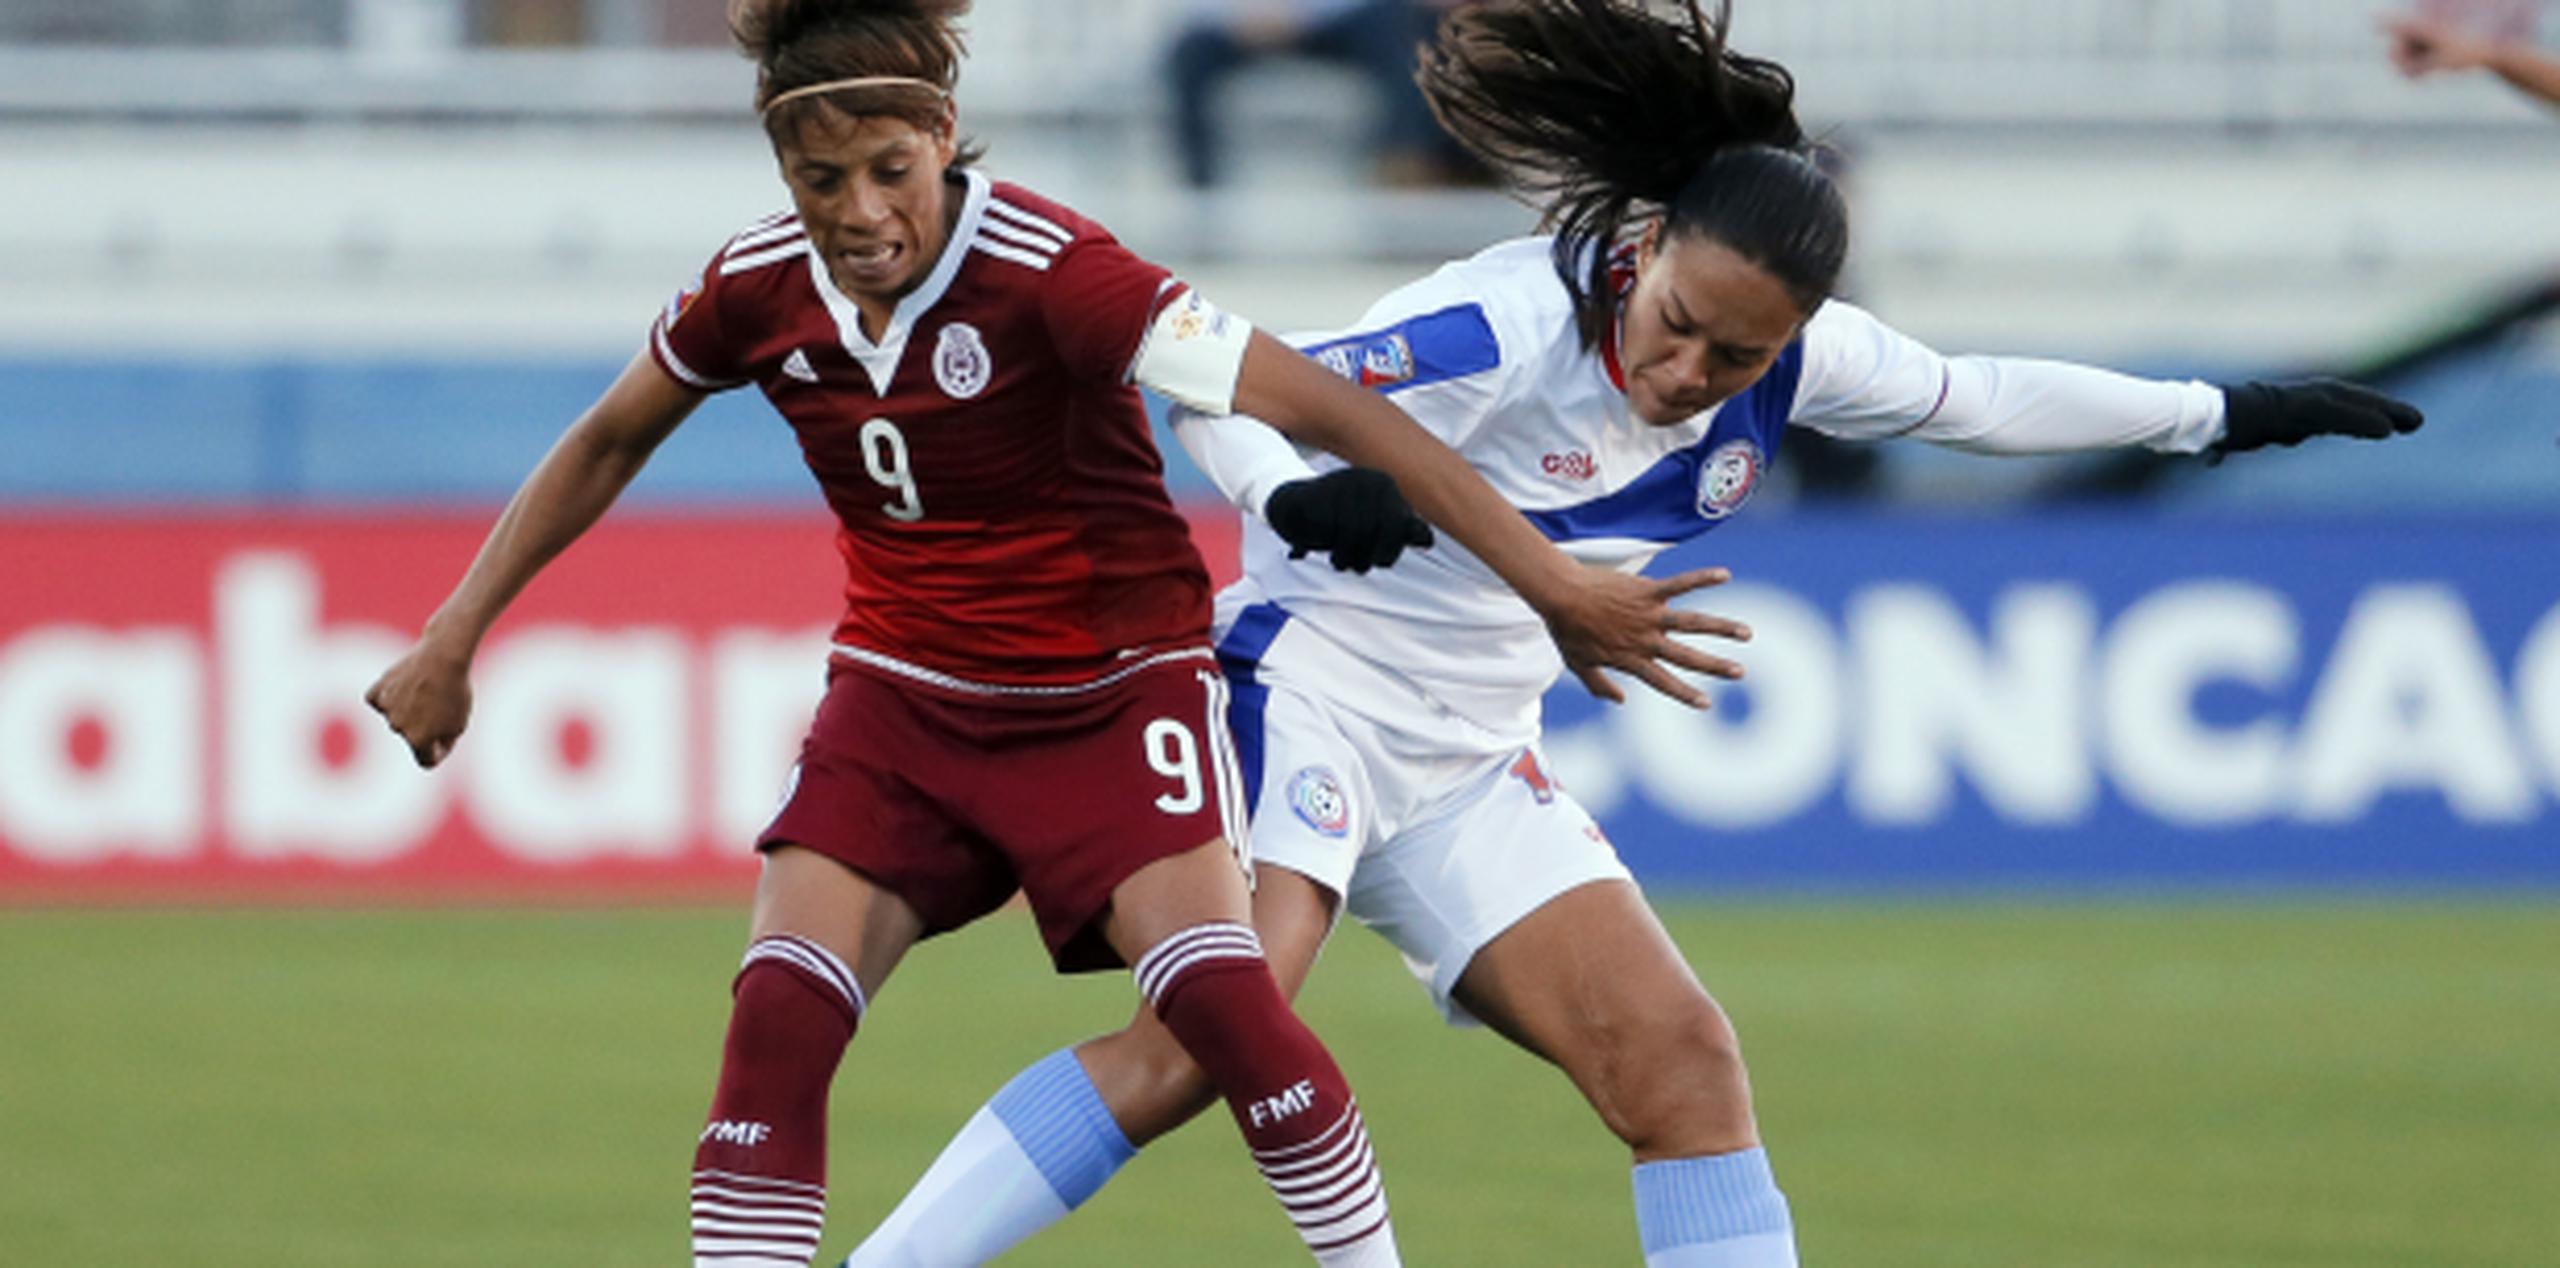 La mexicana Maribel Domínguez protege el balón ante la boricua Ashley Rivera. Domínguez consiguió un triplete en la victoria de México por 6-0. (AP/Tony Gutierrez)
